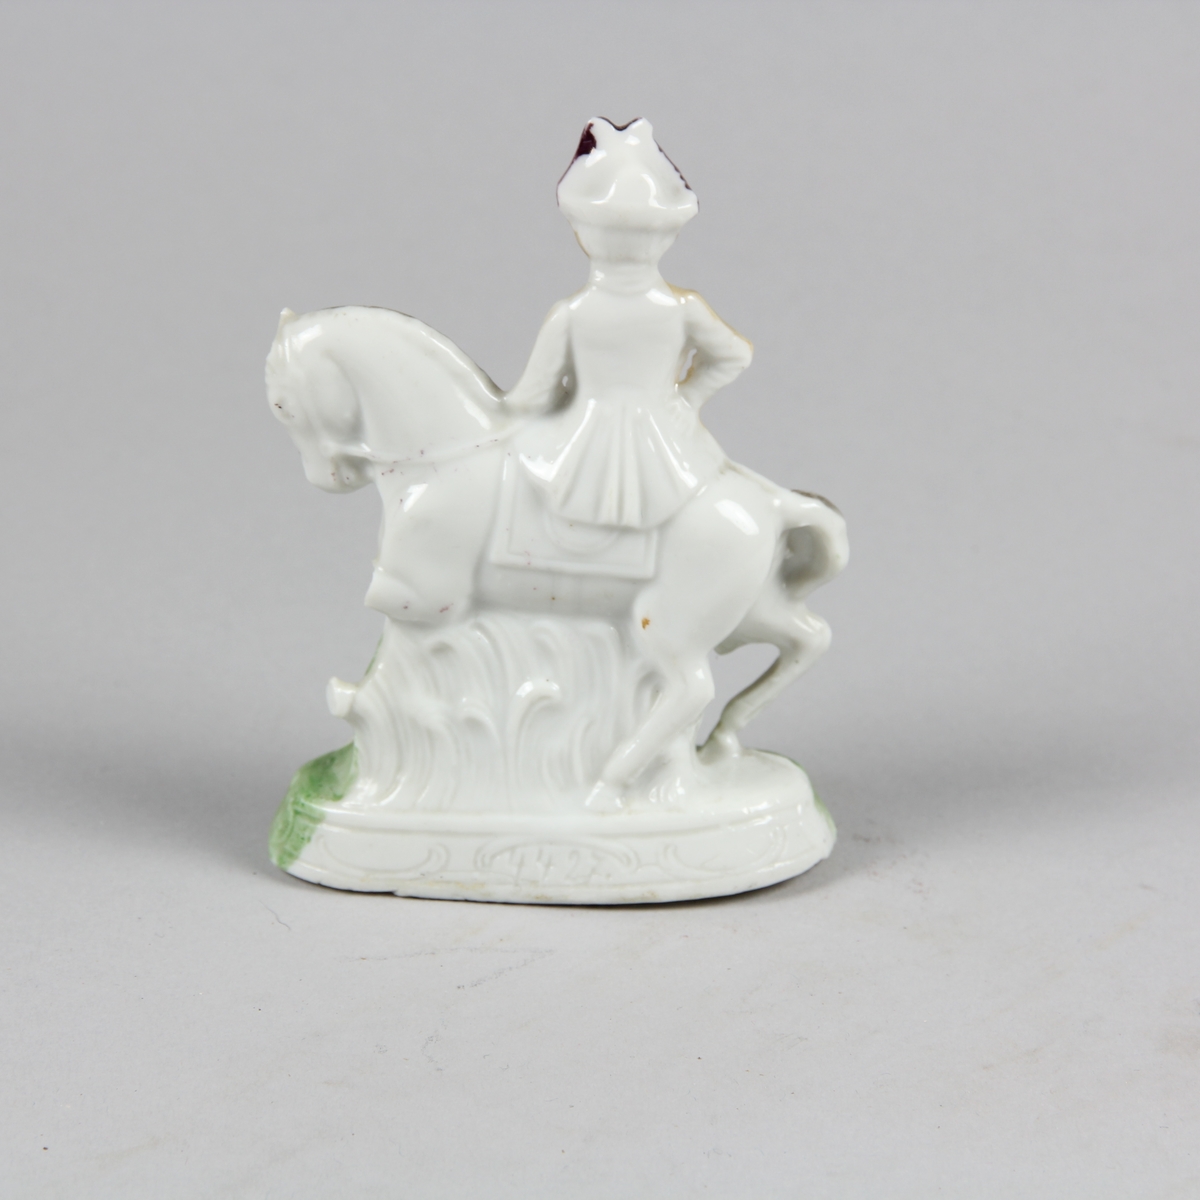 Prydnadsföremål av vitt porslin i form av liten skulptur föreställande en kvinna som sitter på en häst i damsadel. Kvinnan är klädd i lång gulvit klädnad och lila hatt. Hästen vit med svart man. Grönt gräs och grön sockel. Endast framsidan, vänd mot betraktaren är bemålad.